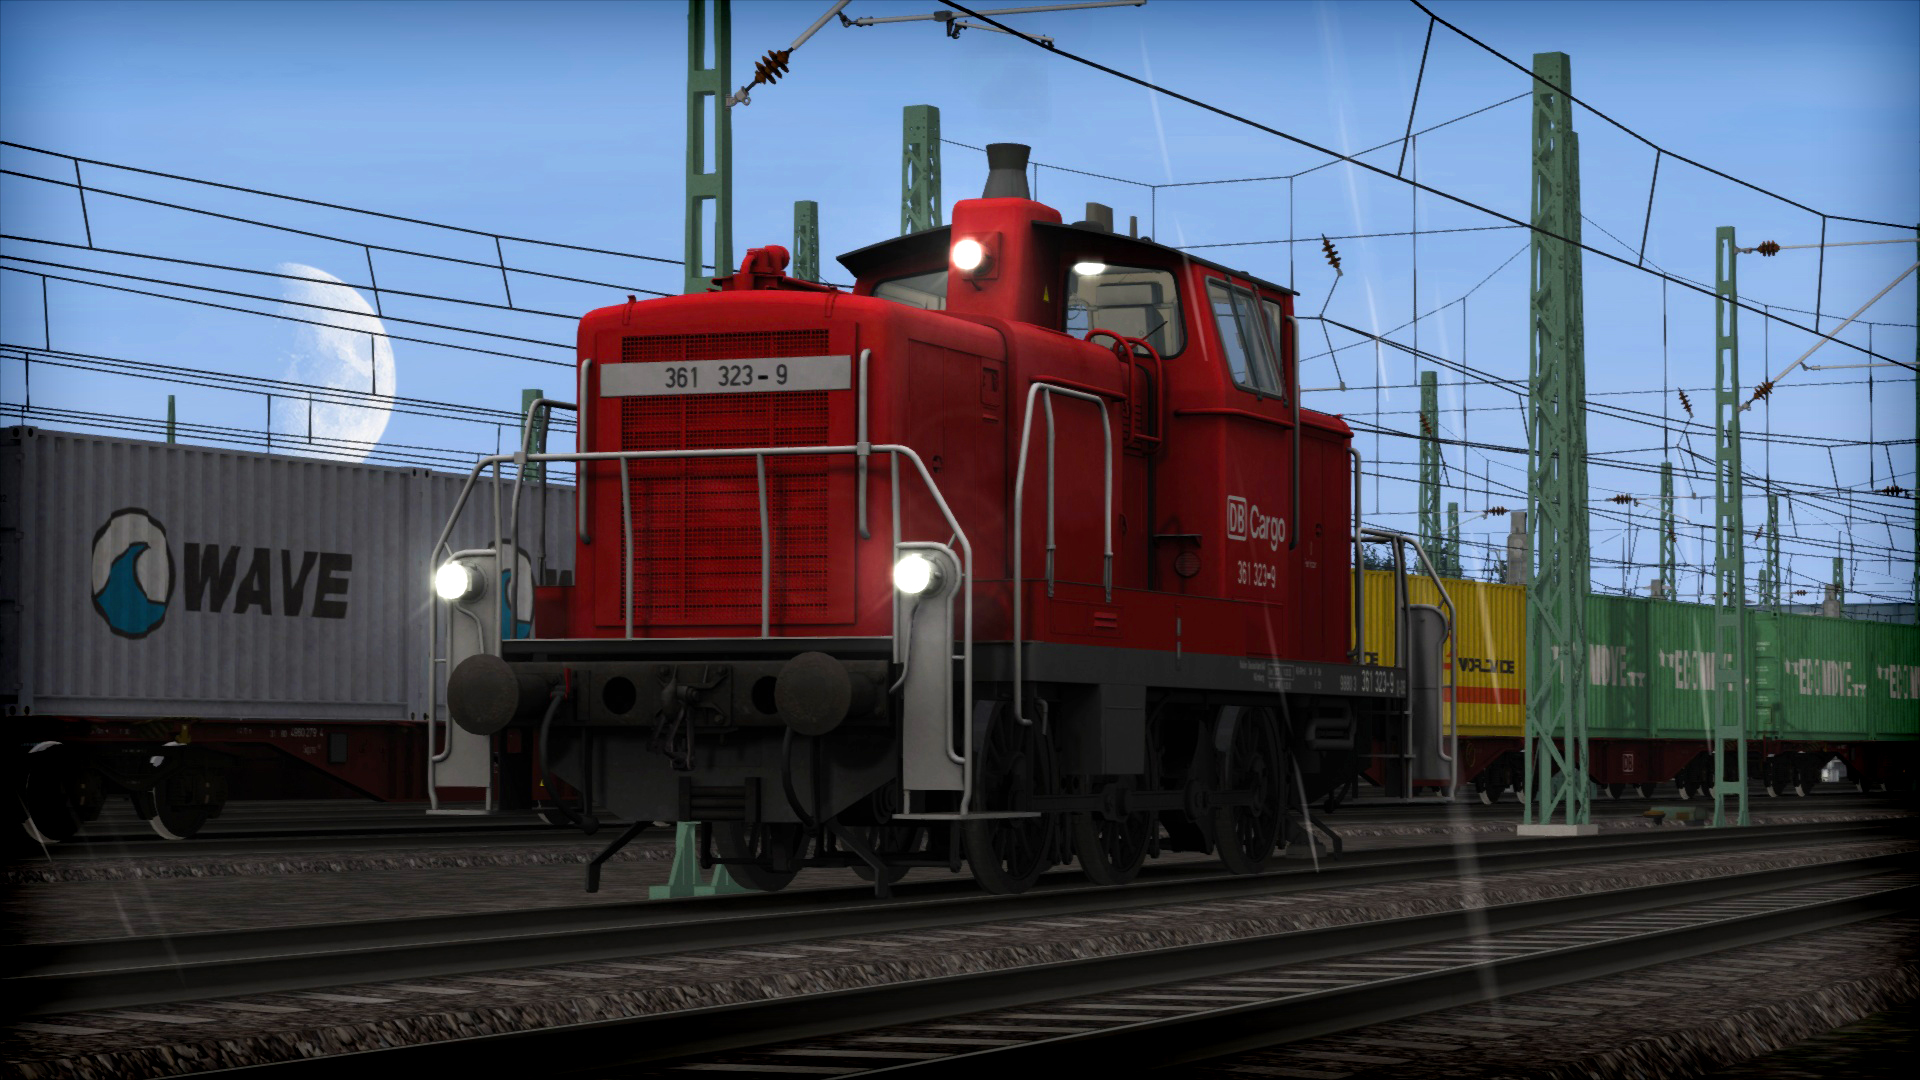 Train Simulator: DB BR 361 Loco Add-On screenshot